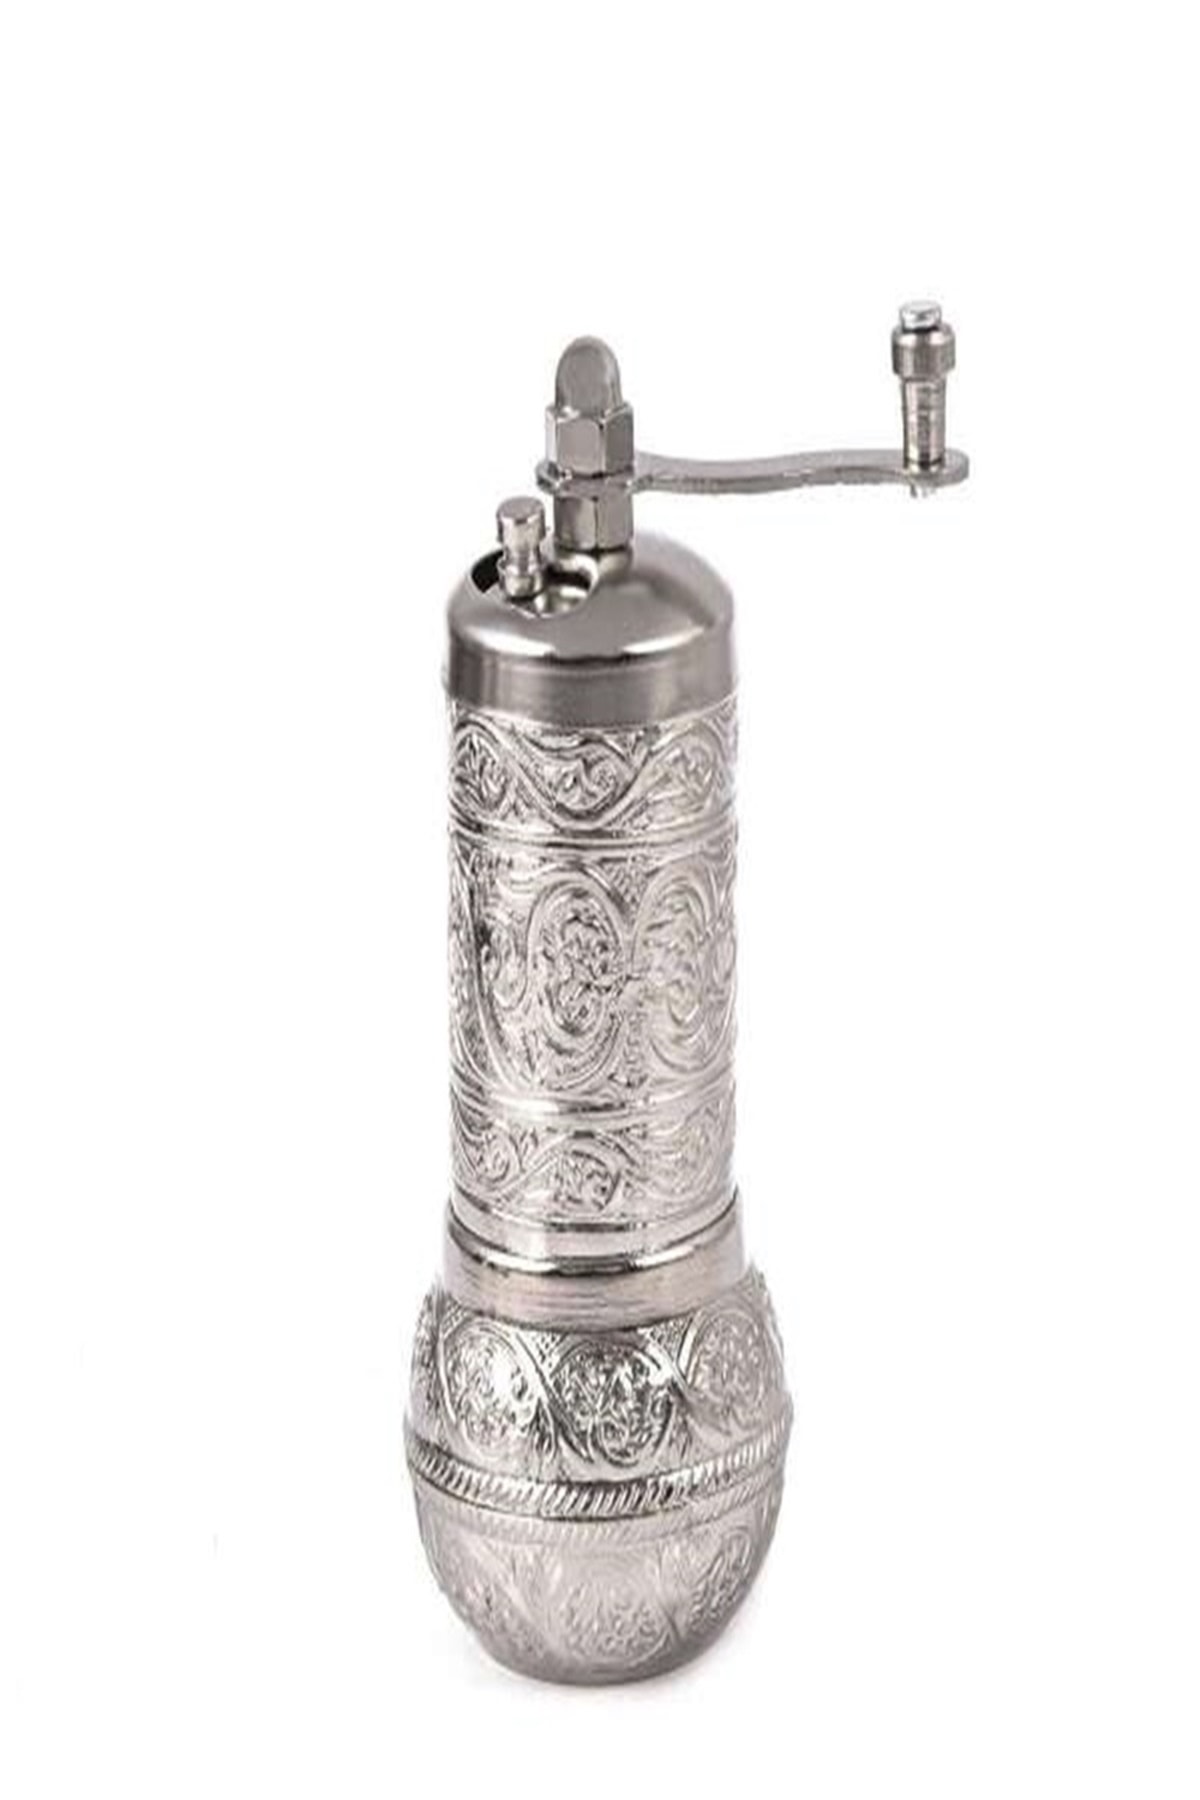 https://www.theottomanbazaar.com/spice-grinder-silver-color-spice-grinder-manual-575-36-K.jpg